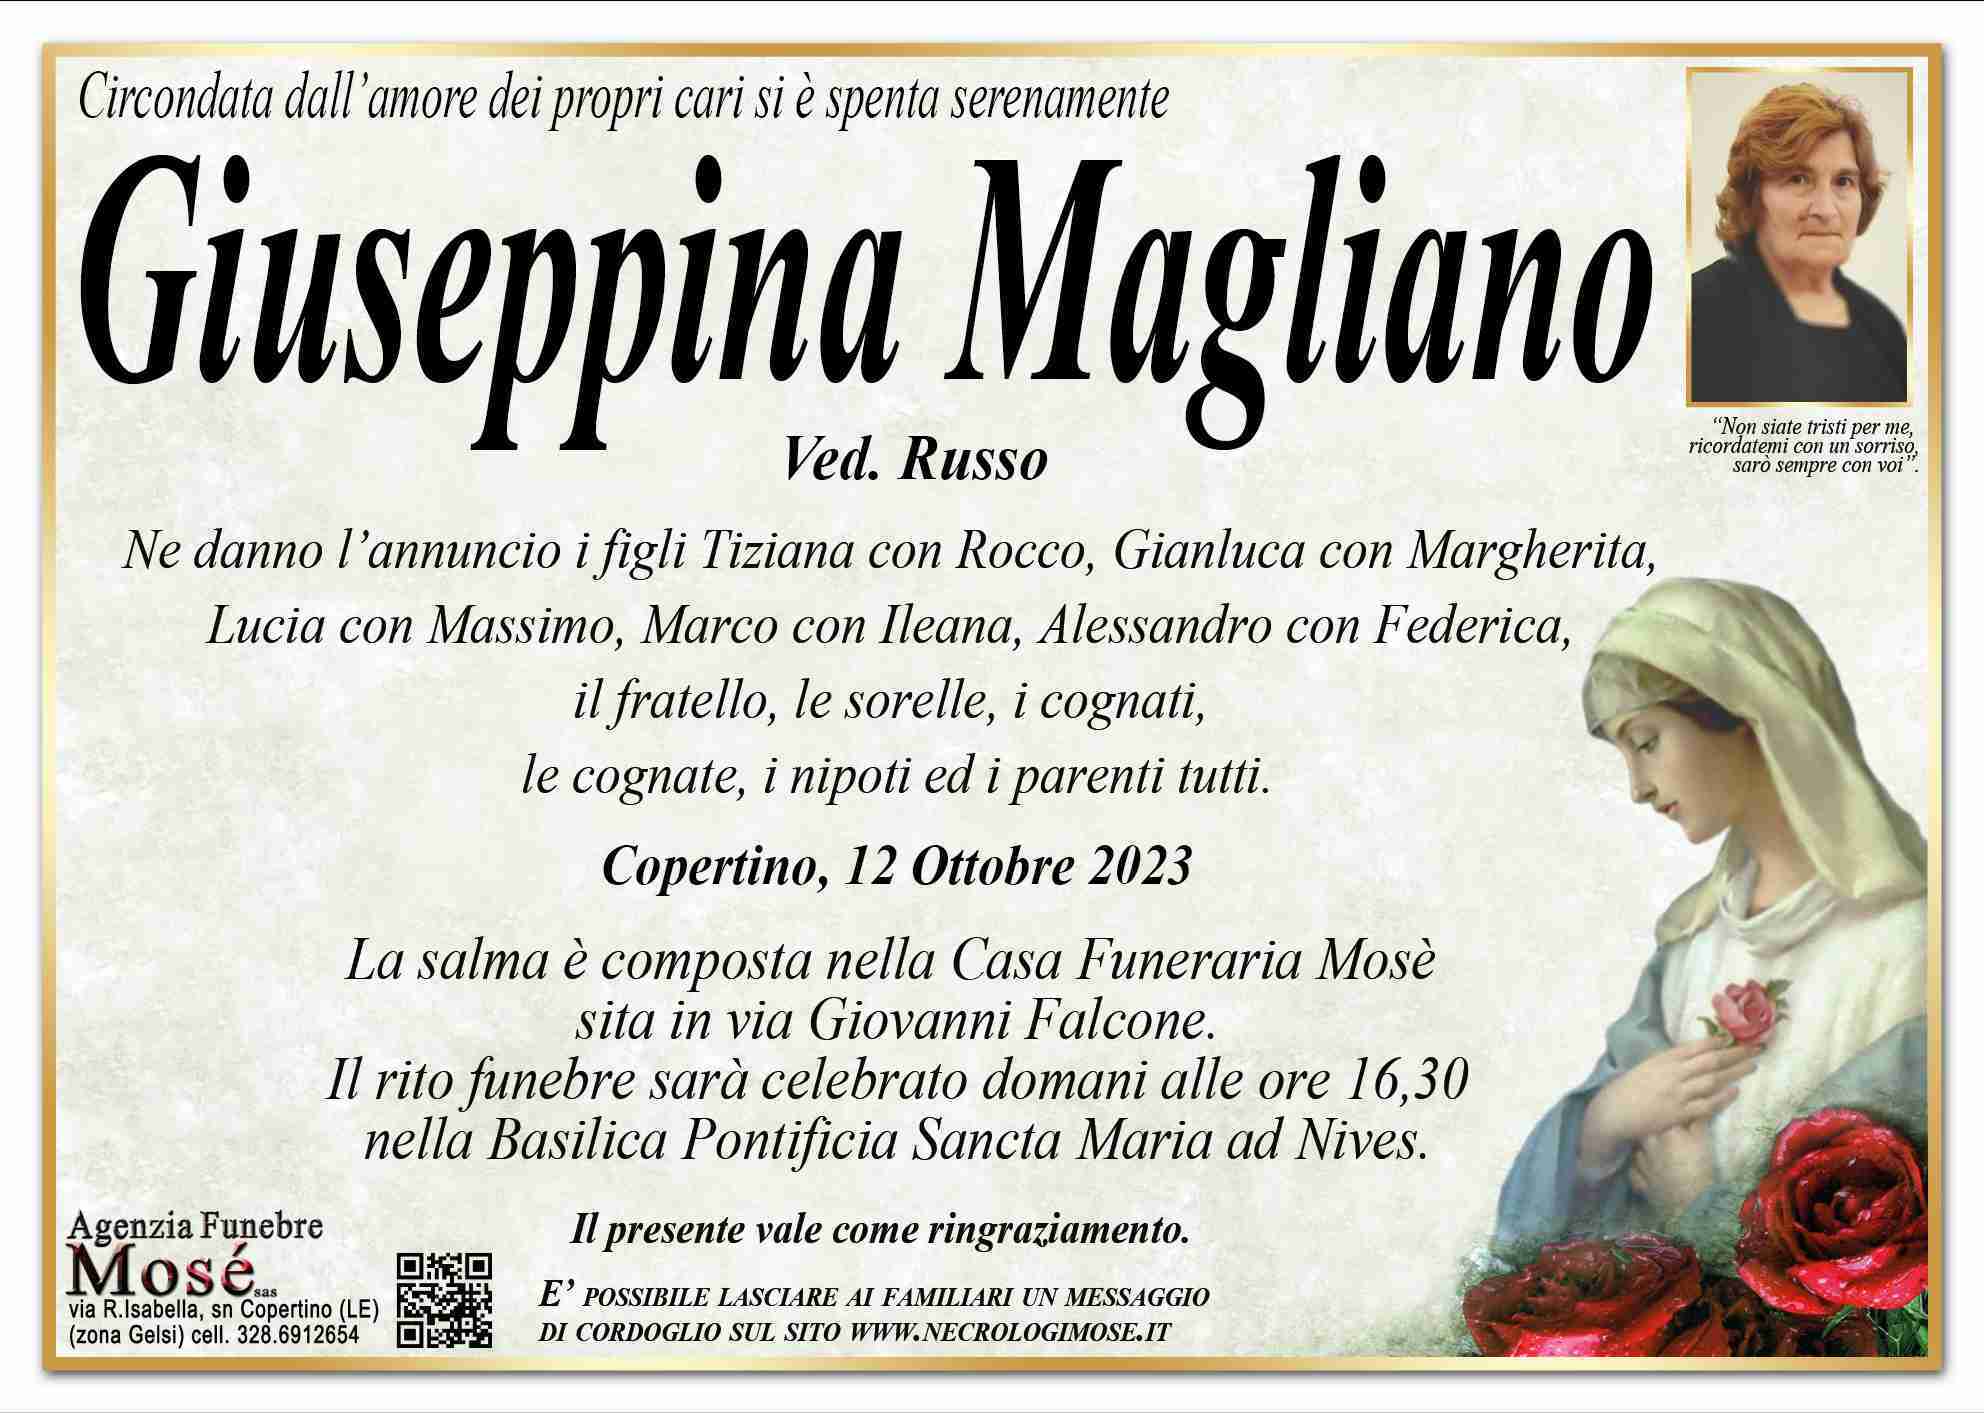 Giuseppina Magliano